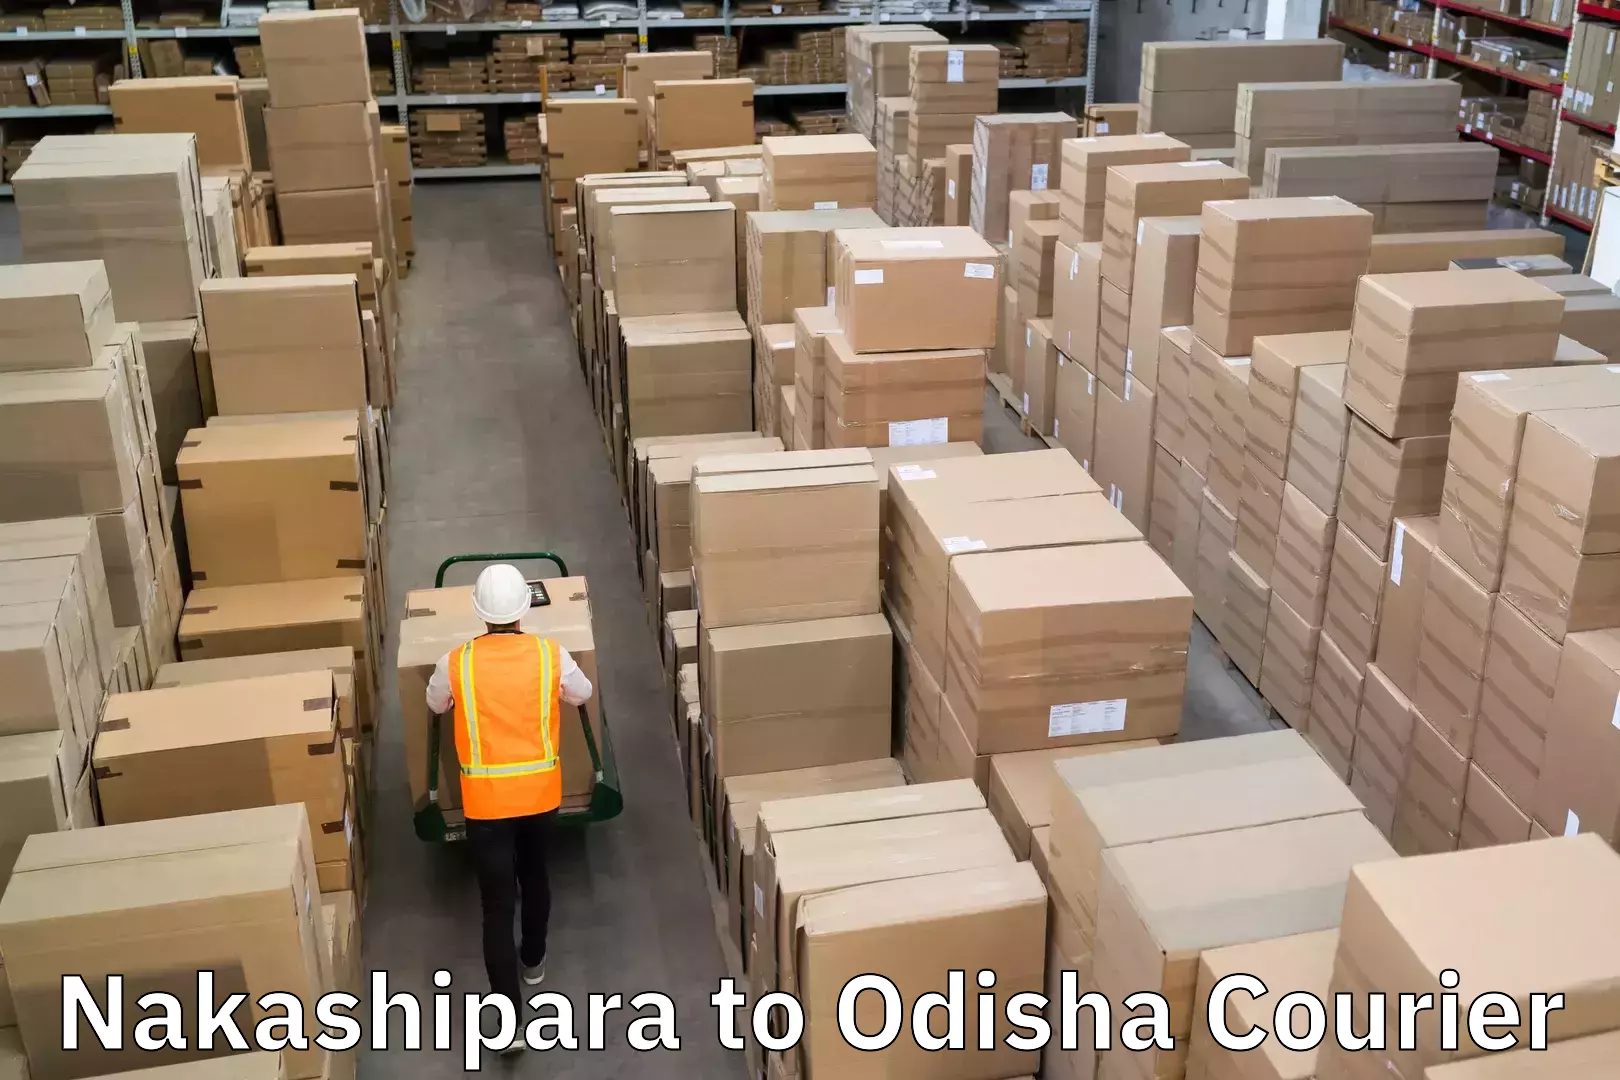 Customized shipping options Nakashipara to Muribahal